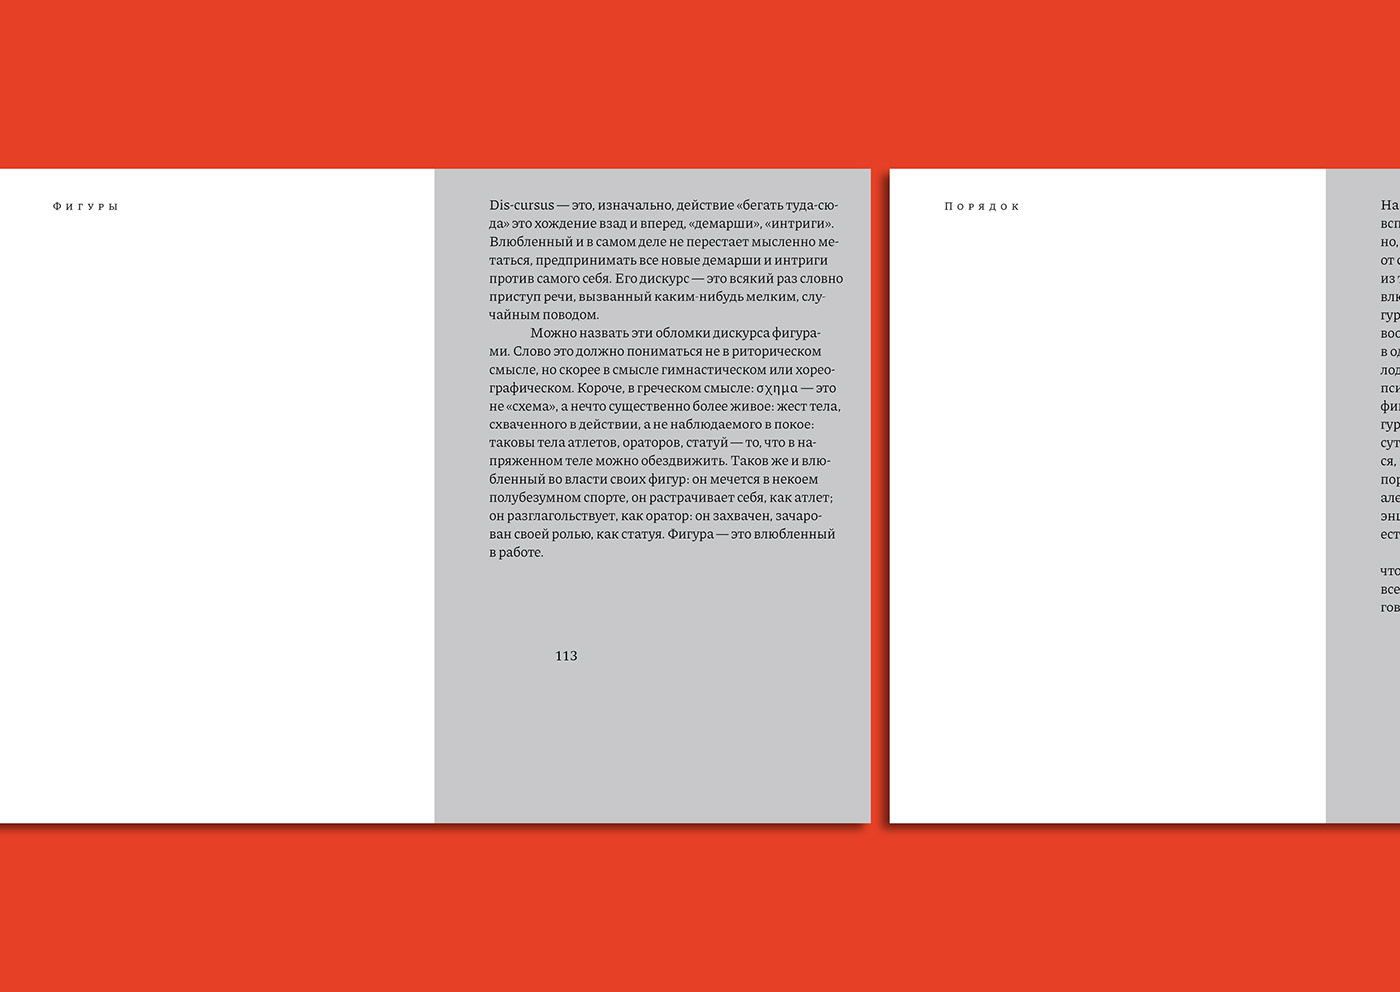 book book cover Book Cover Design book design books cover editorial editorial design  typography   Roland Barthes